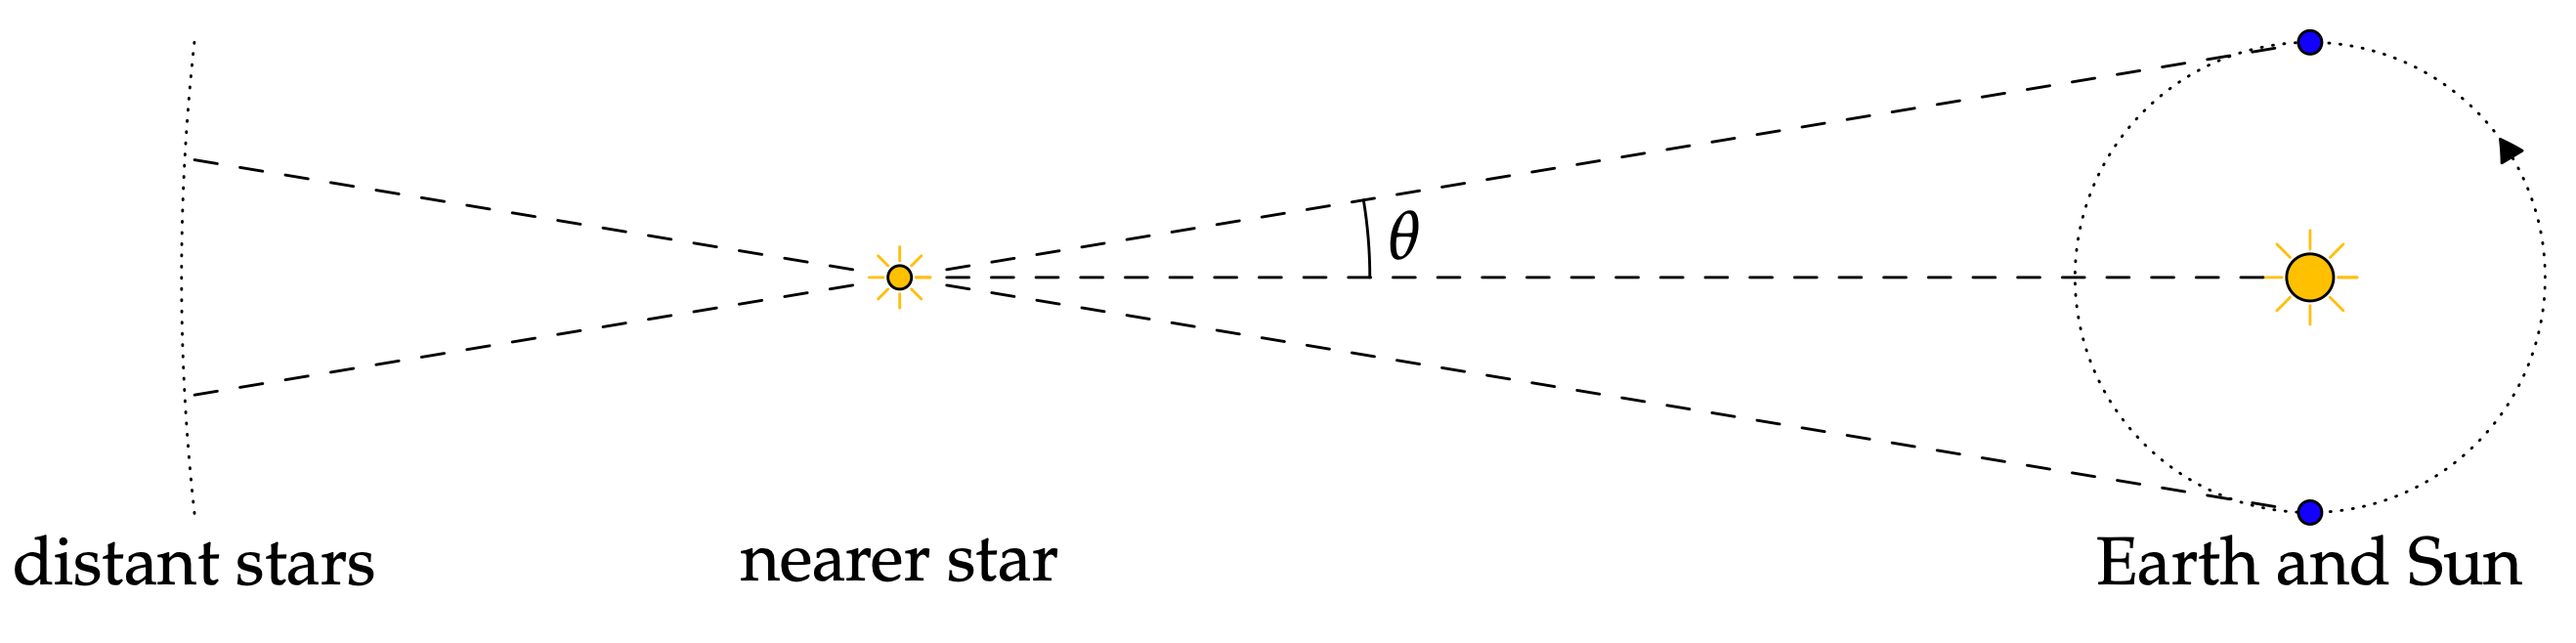 primer astronomije - slika www.math.uci.edu